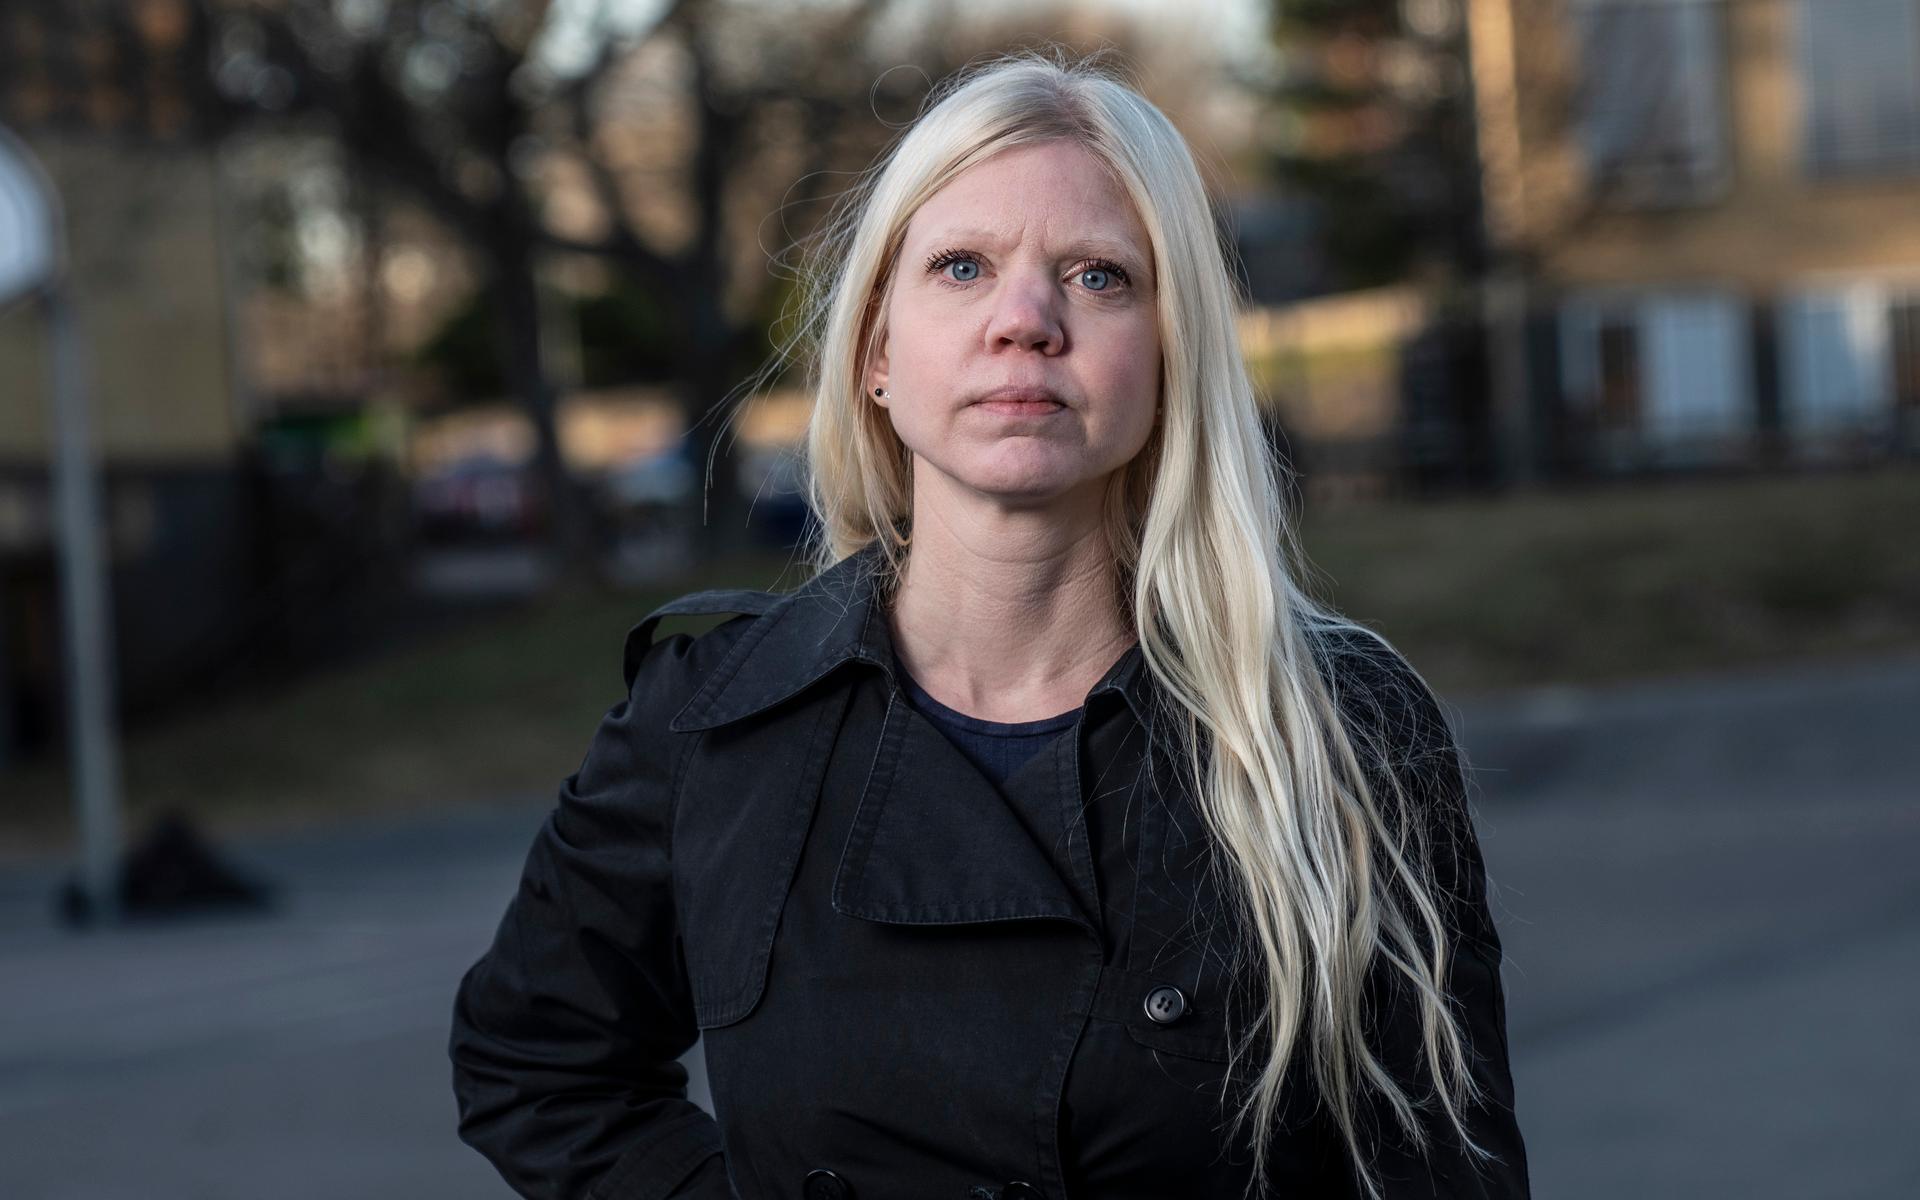 Anna Ekström, politikreporter: ”Jag ser fram emot en lång, intensiv och spännande valnatt. Och att följa hur politikerna syr ihop det resultat väljarna gett dem. Vem tar vem?”